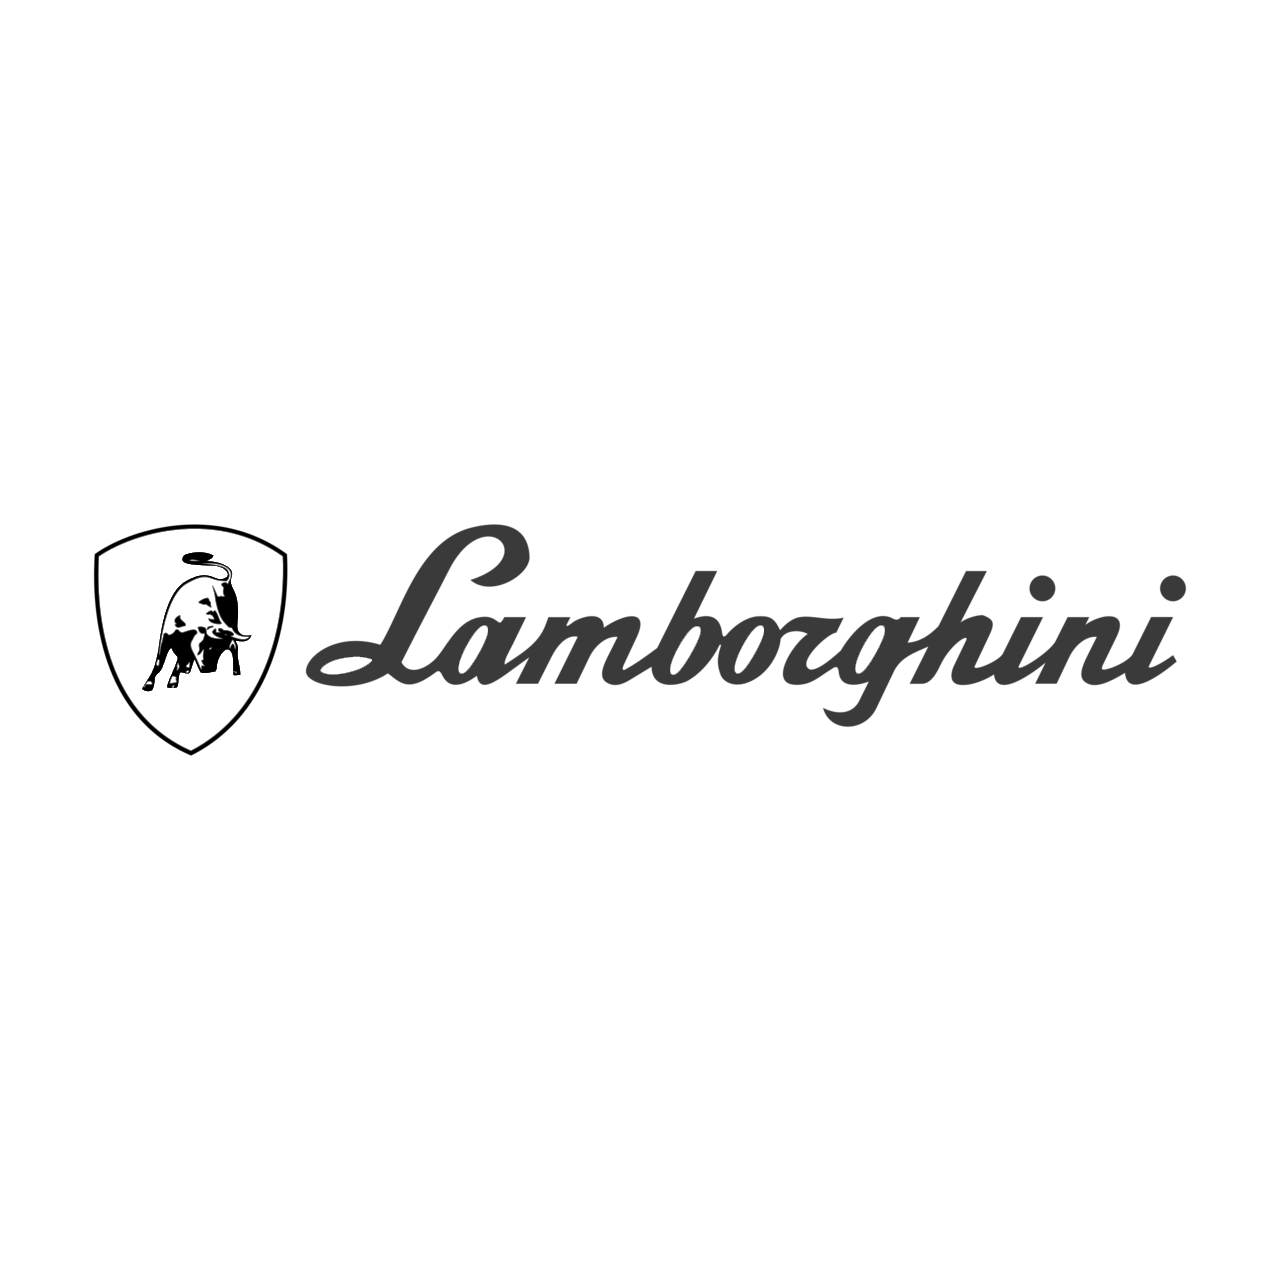 lamborghini-logo-black-and-white-3